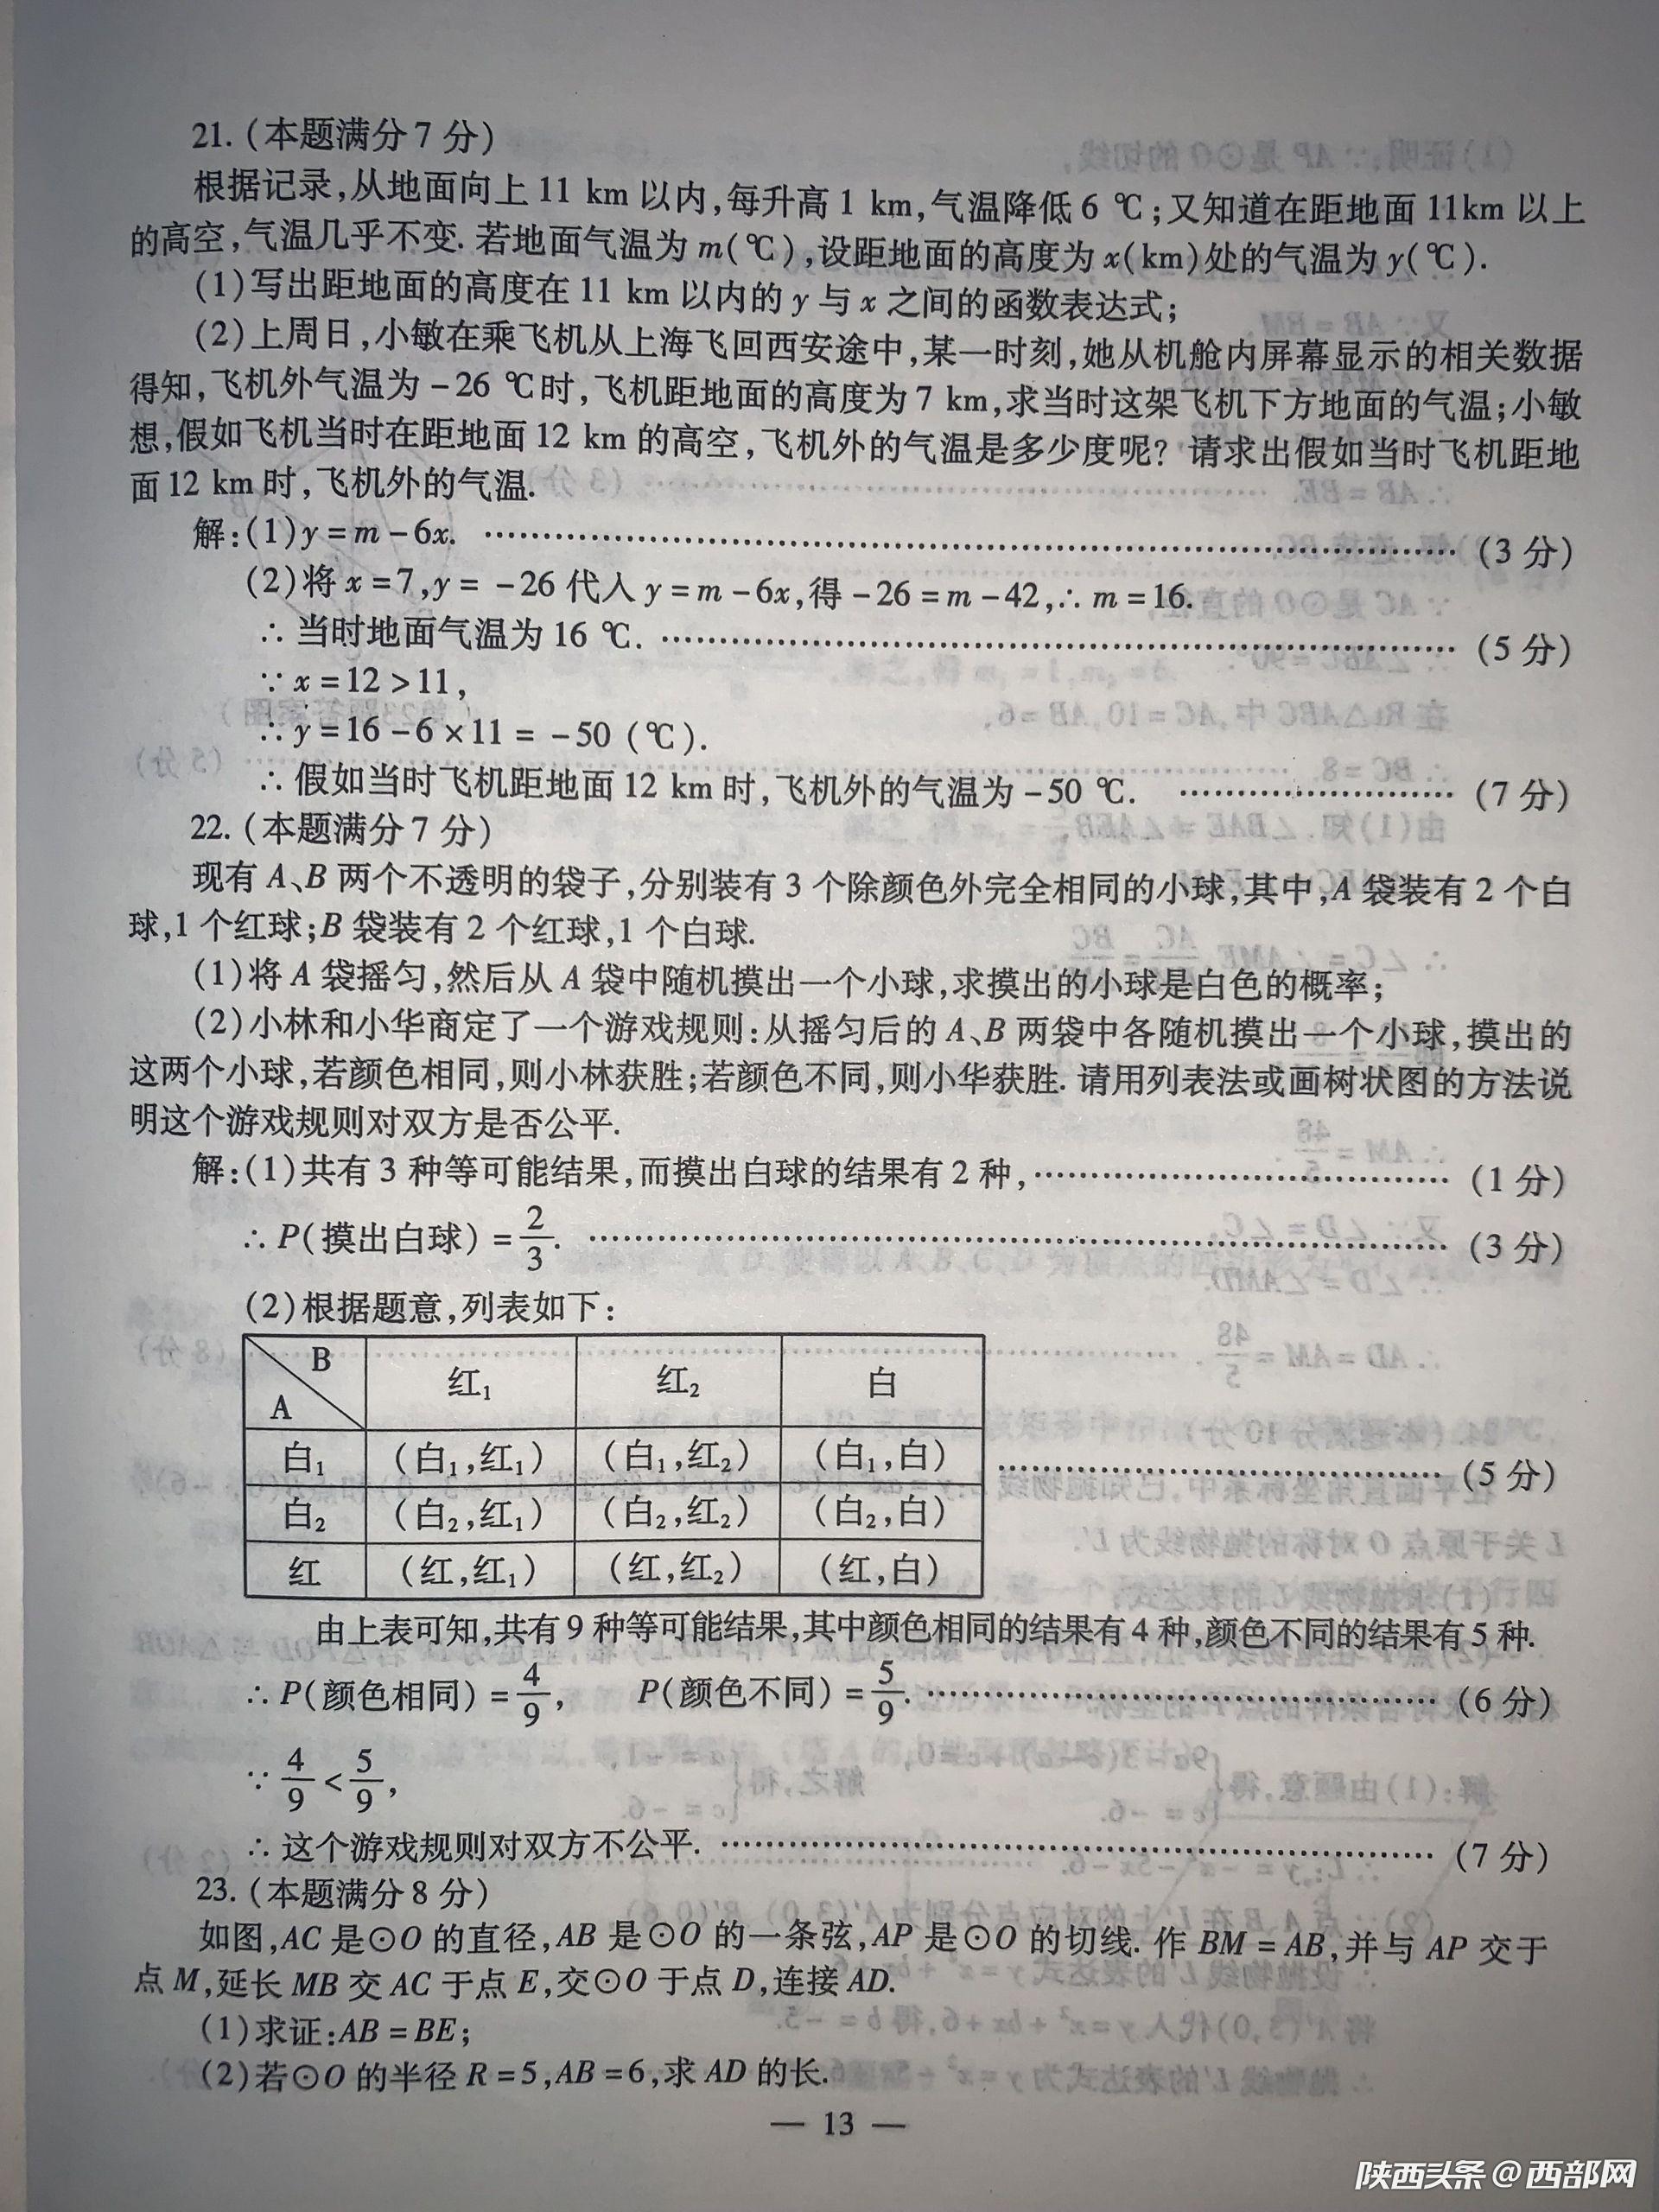 2019年陕西中考《数学》真题及答案已公布